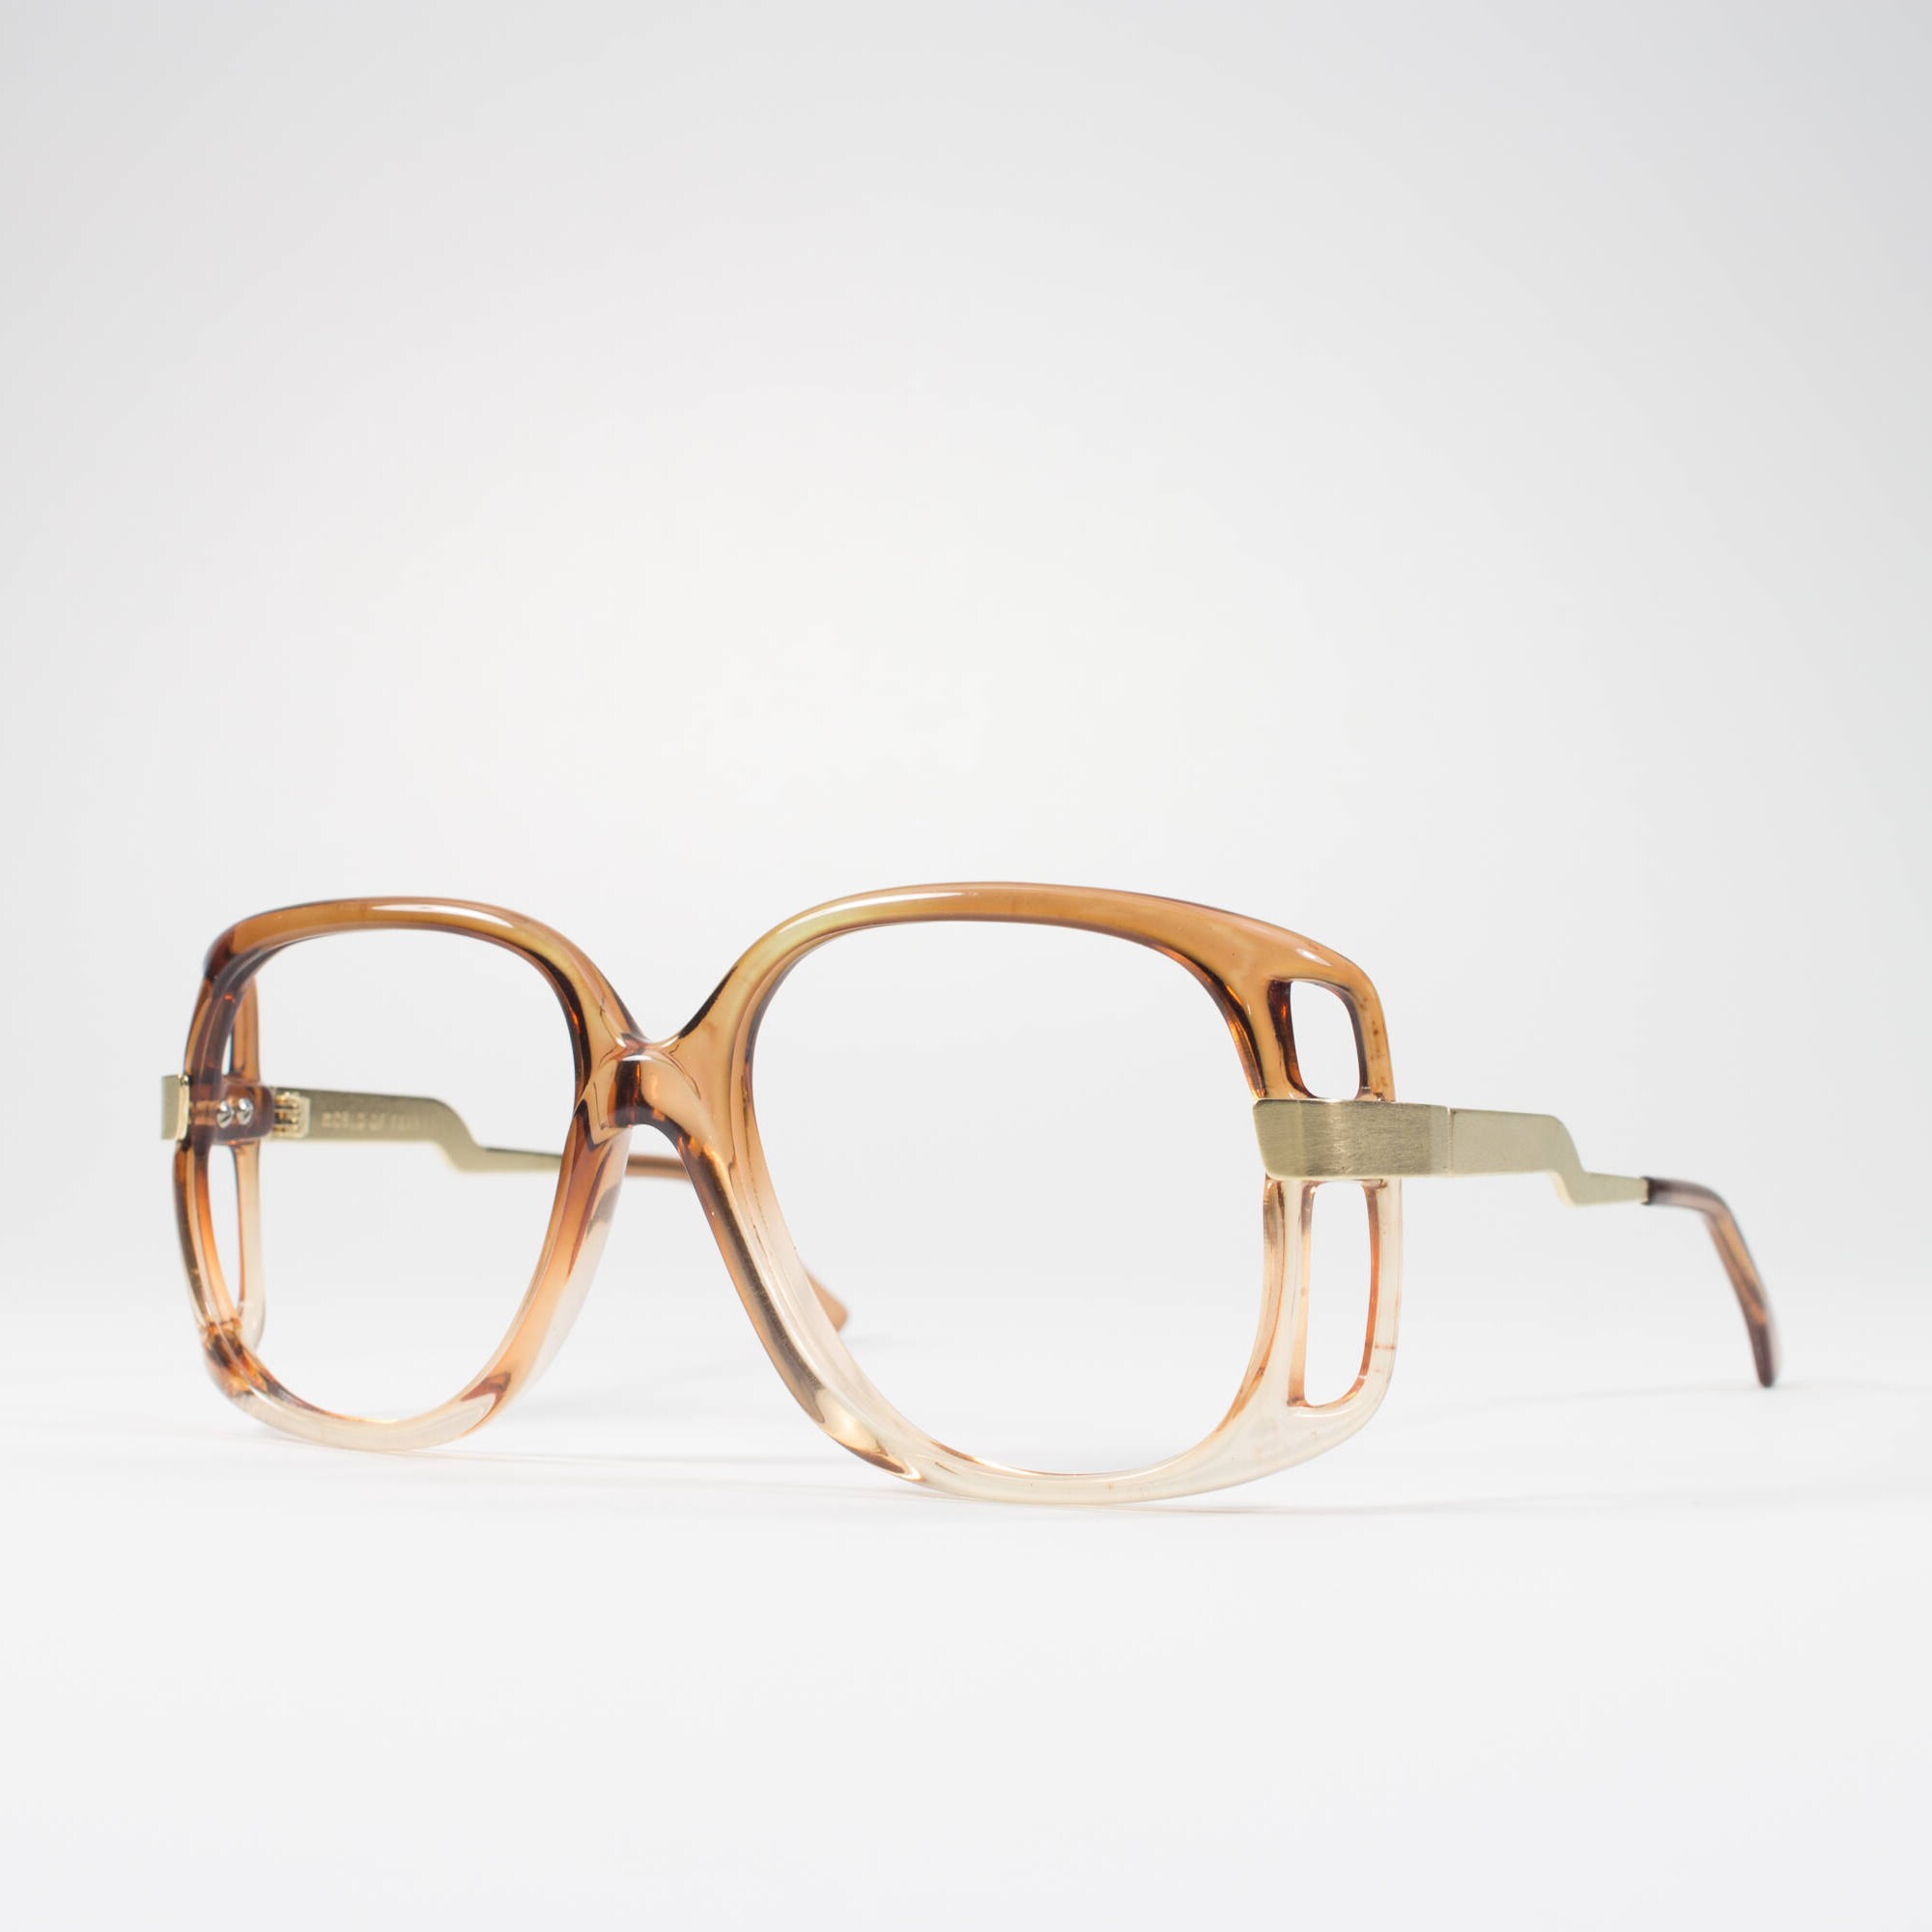 Vintage Eyeglasses 70s Glasses 1970s Oversized Glasses Frames